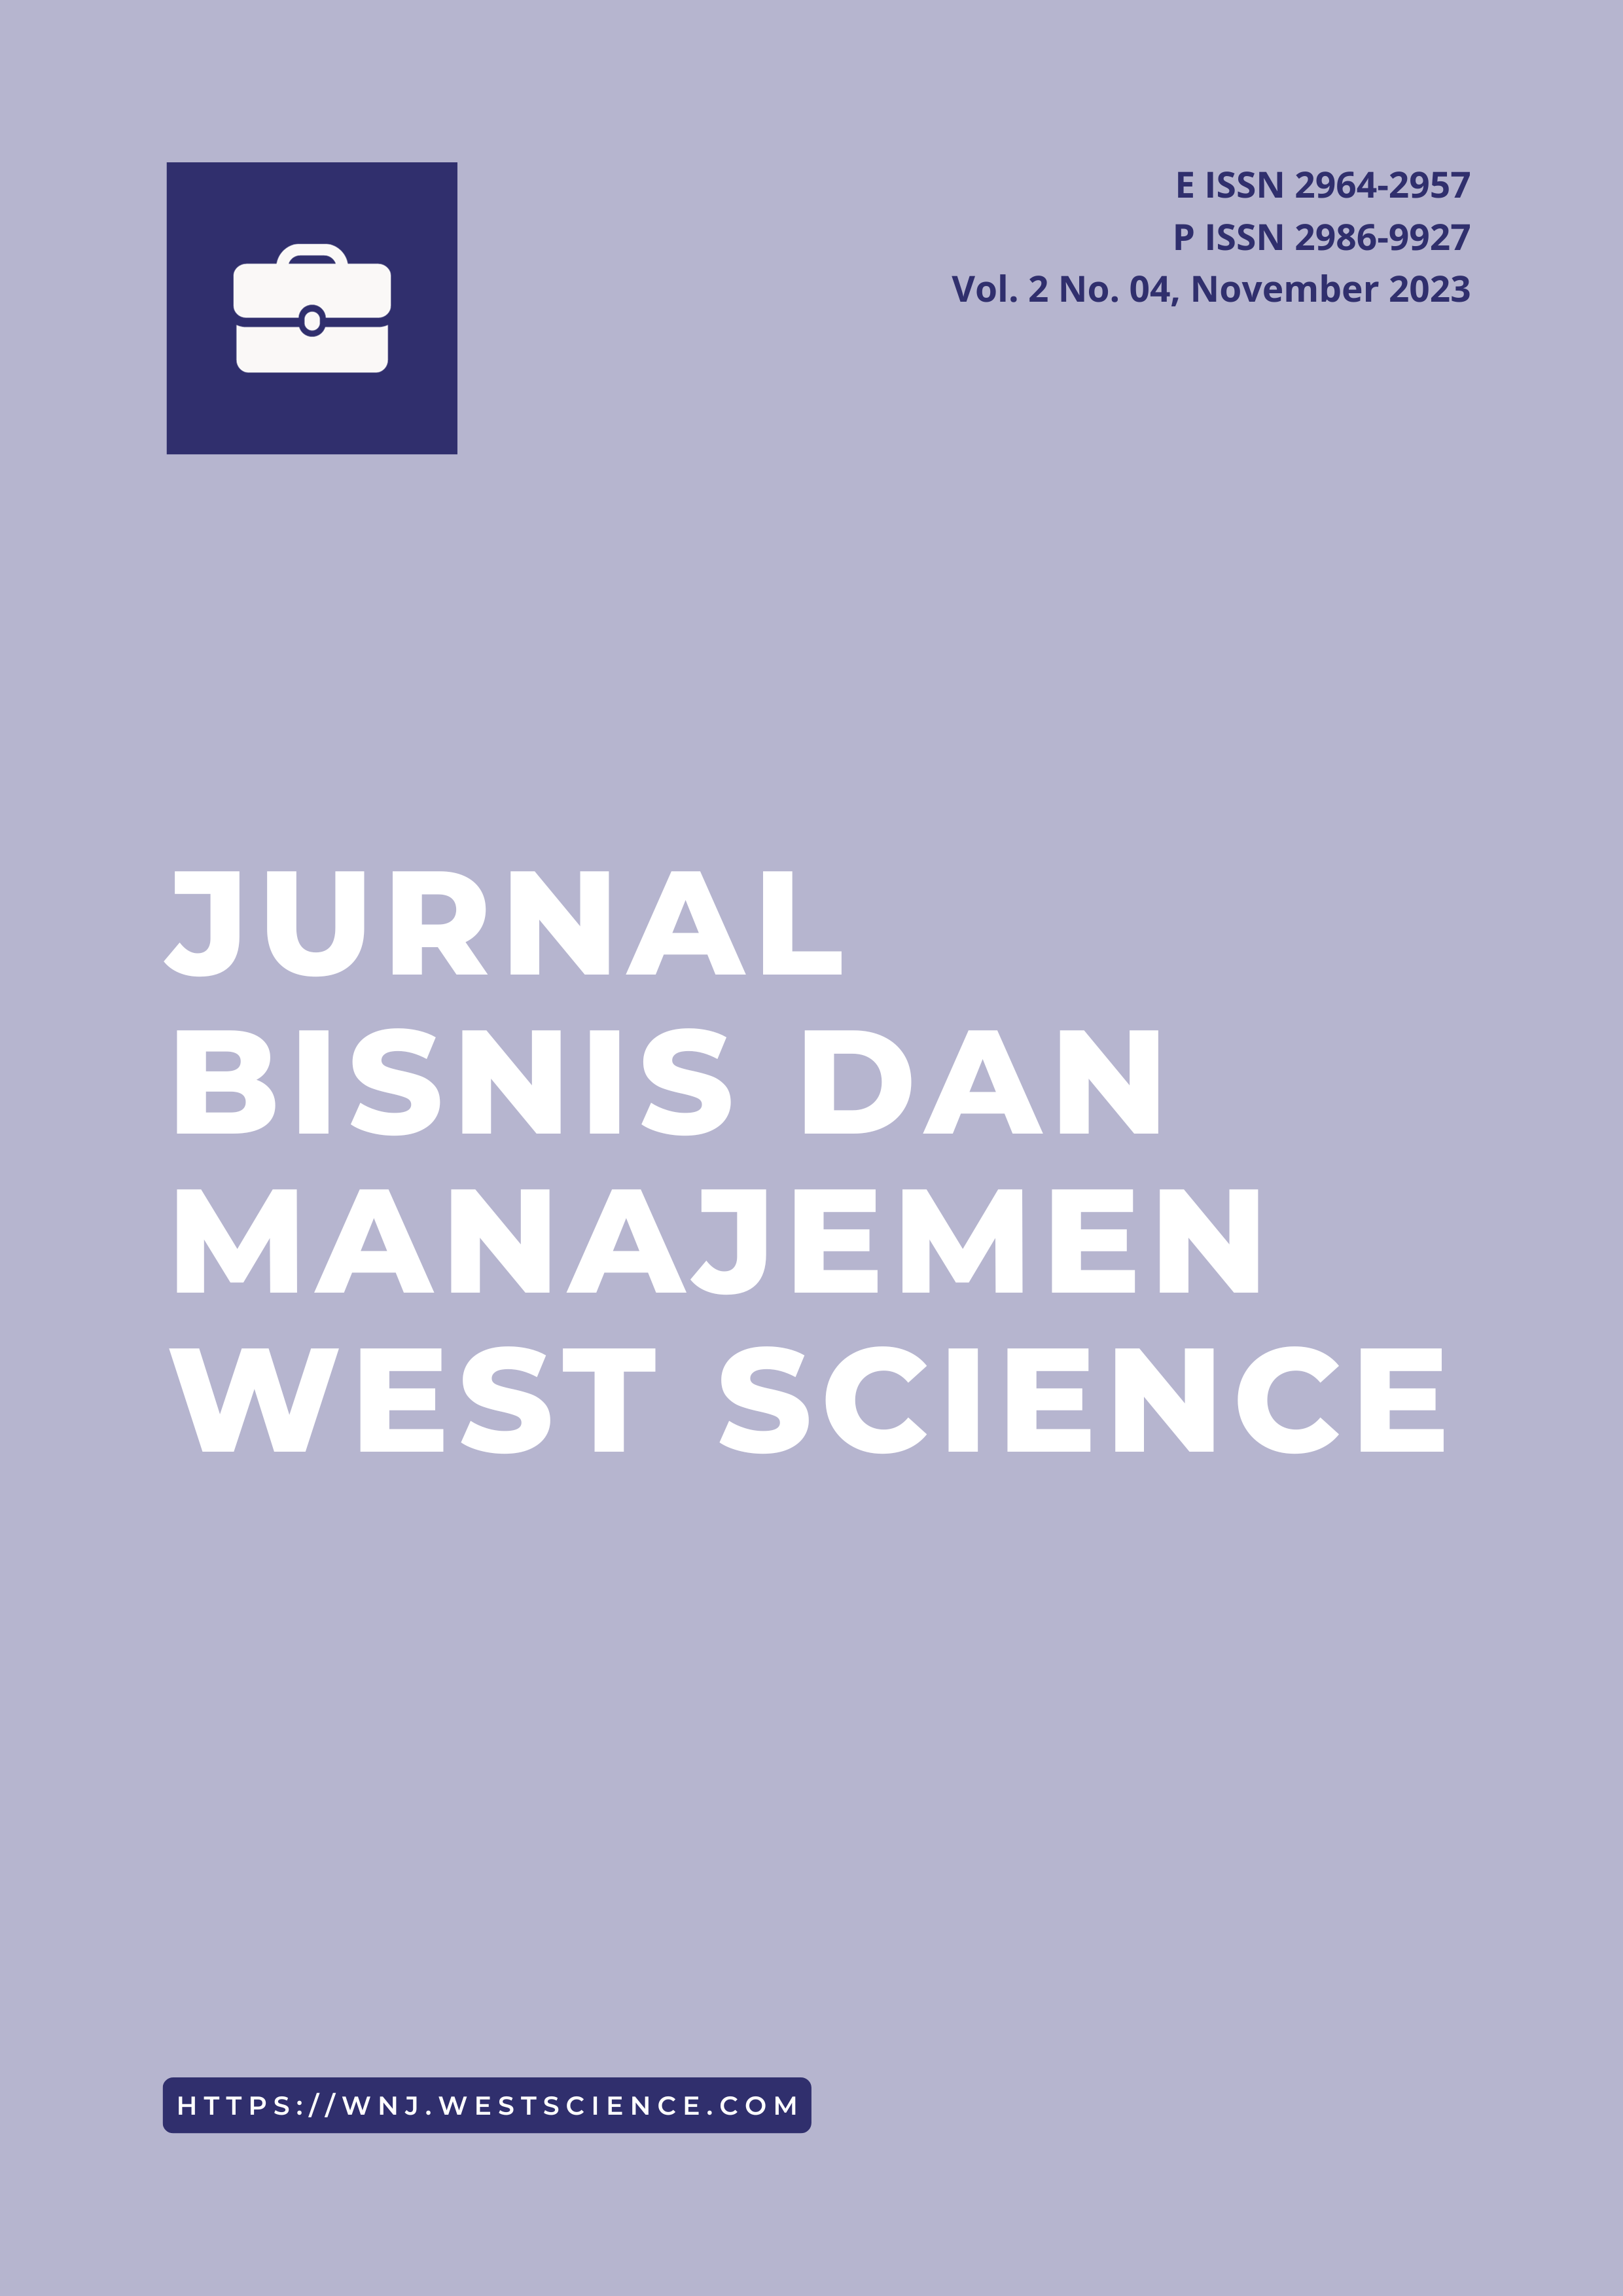 					Lihat Vol 2 No 04 (2023): Jurnal Bisnis dan Manajemen West Science
				